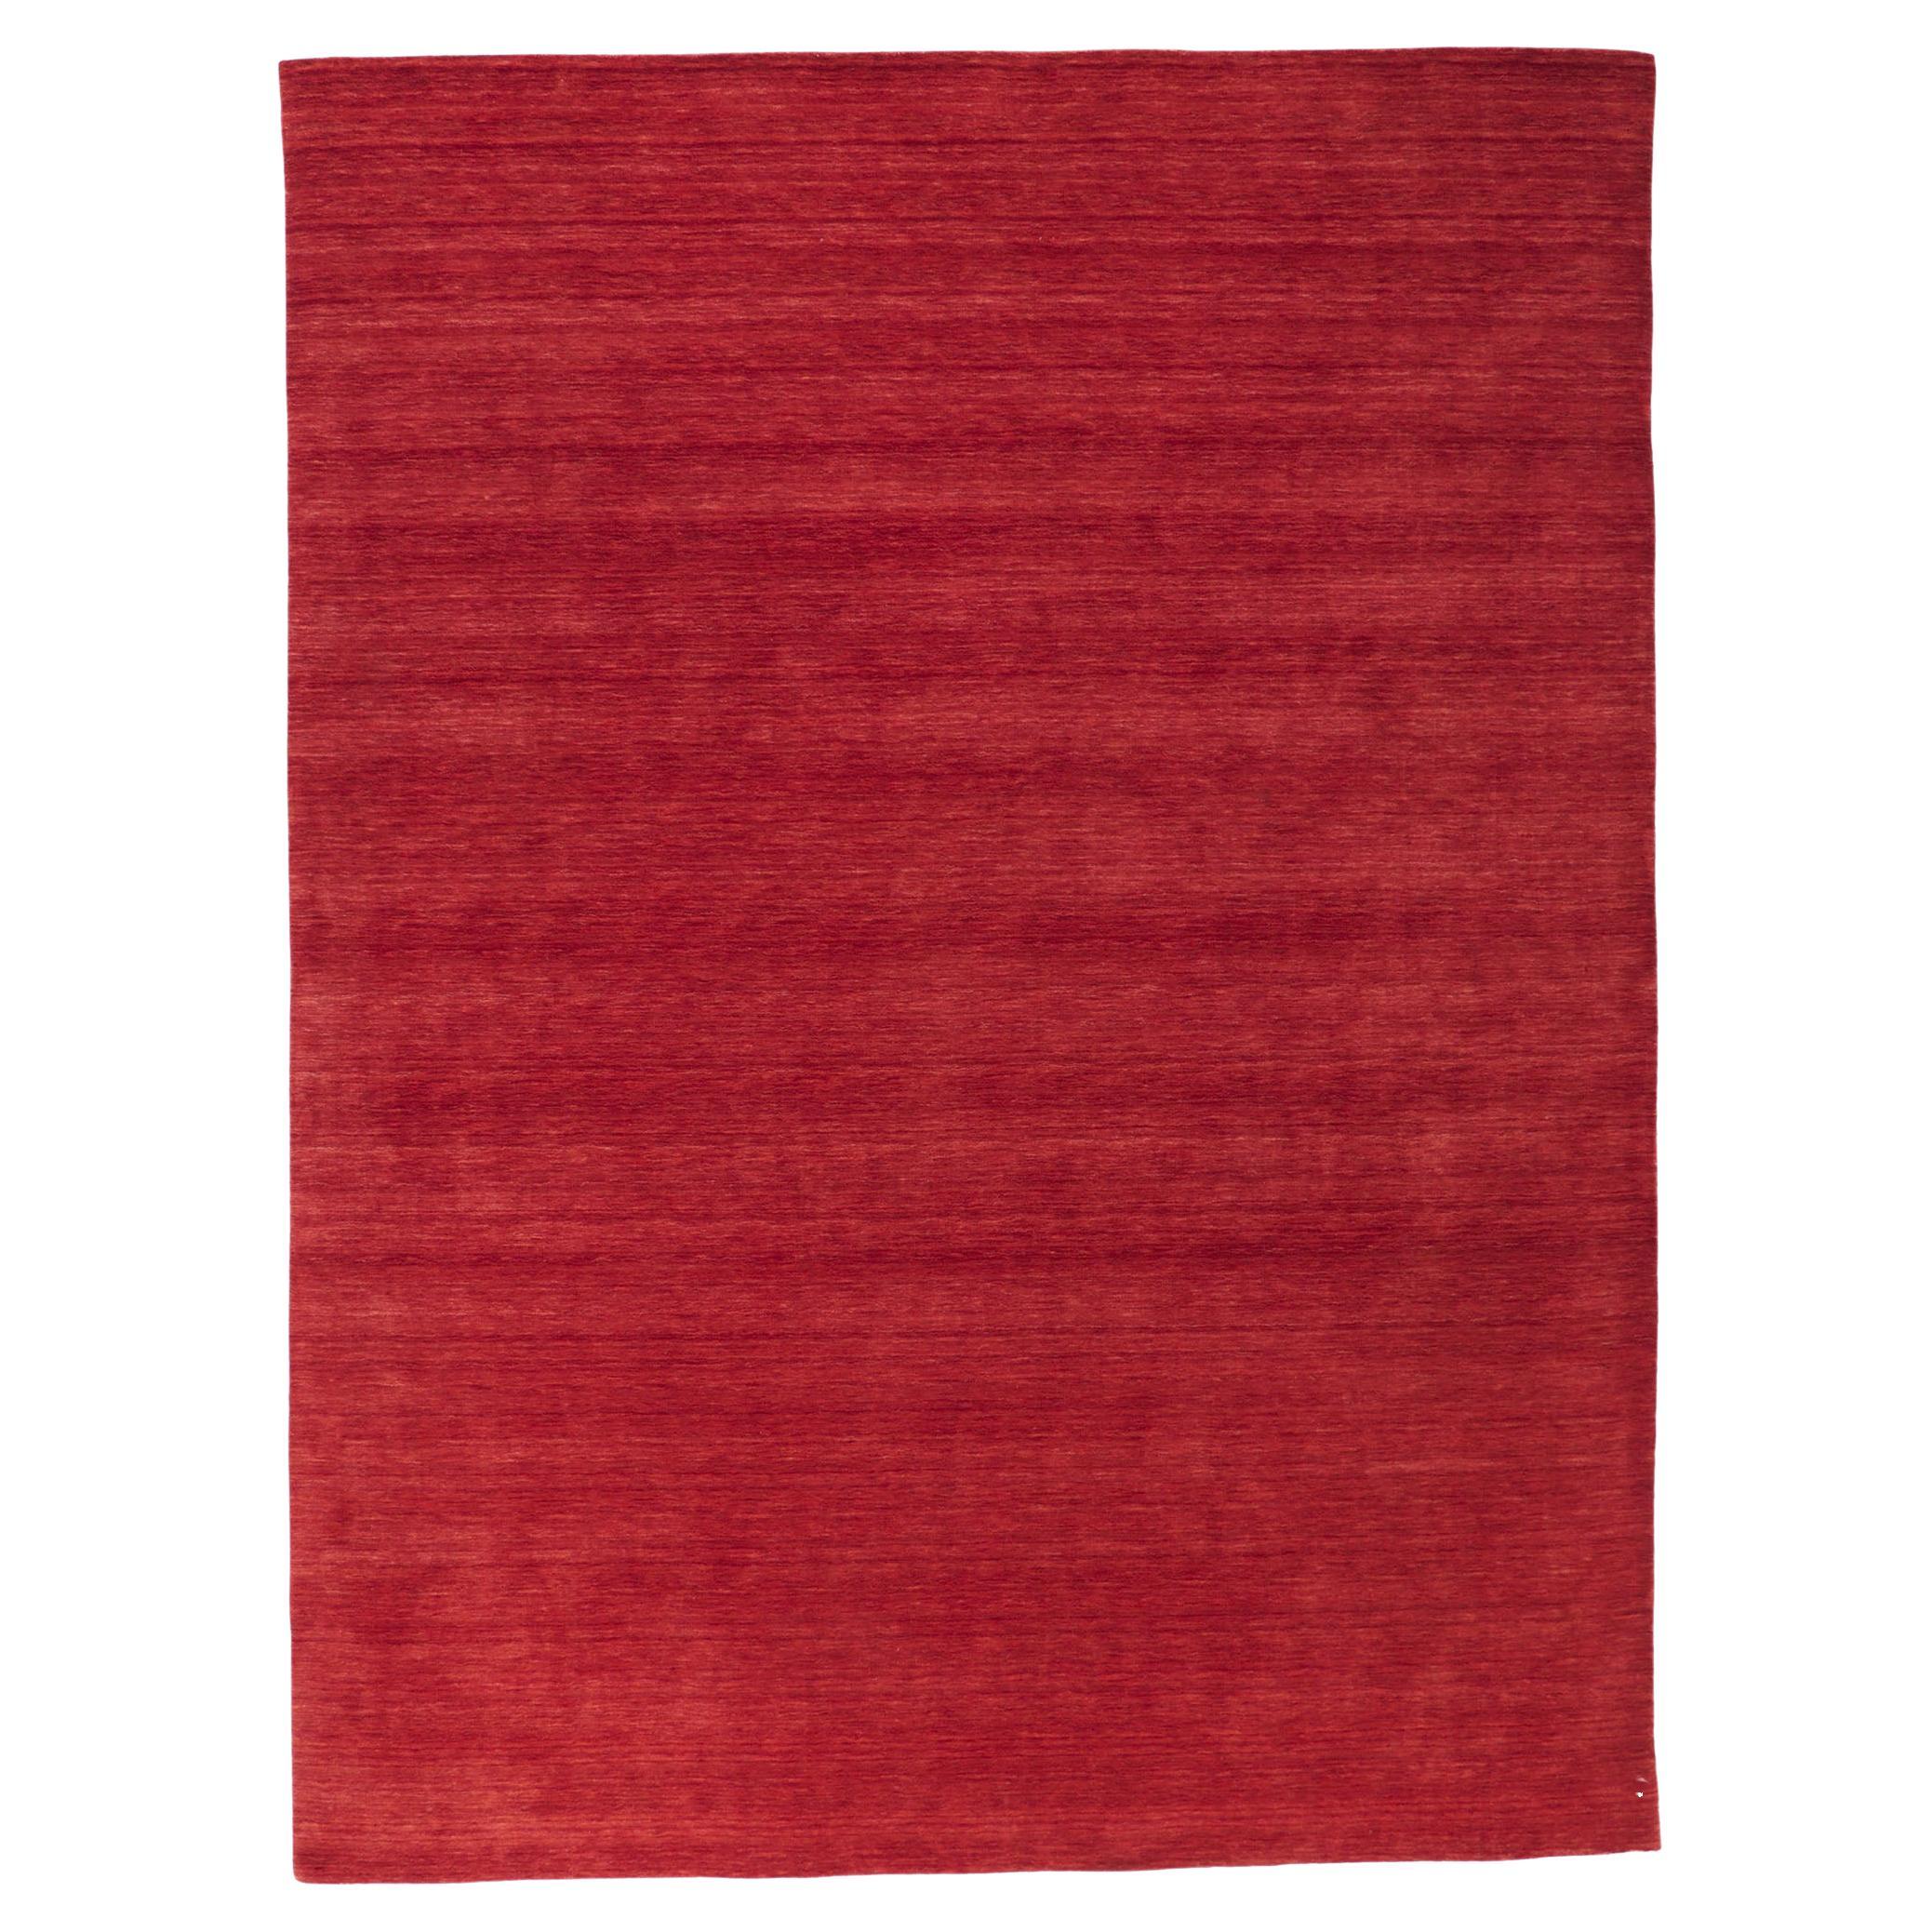 Zeitgenössischer roter Teppich im modernen Stil